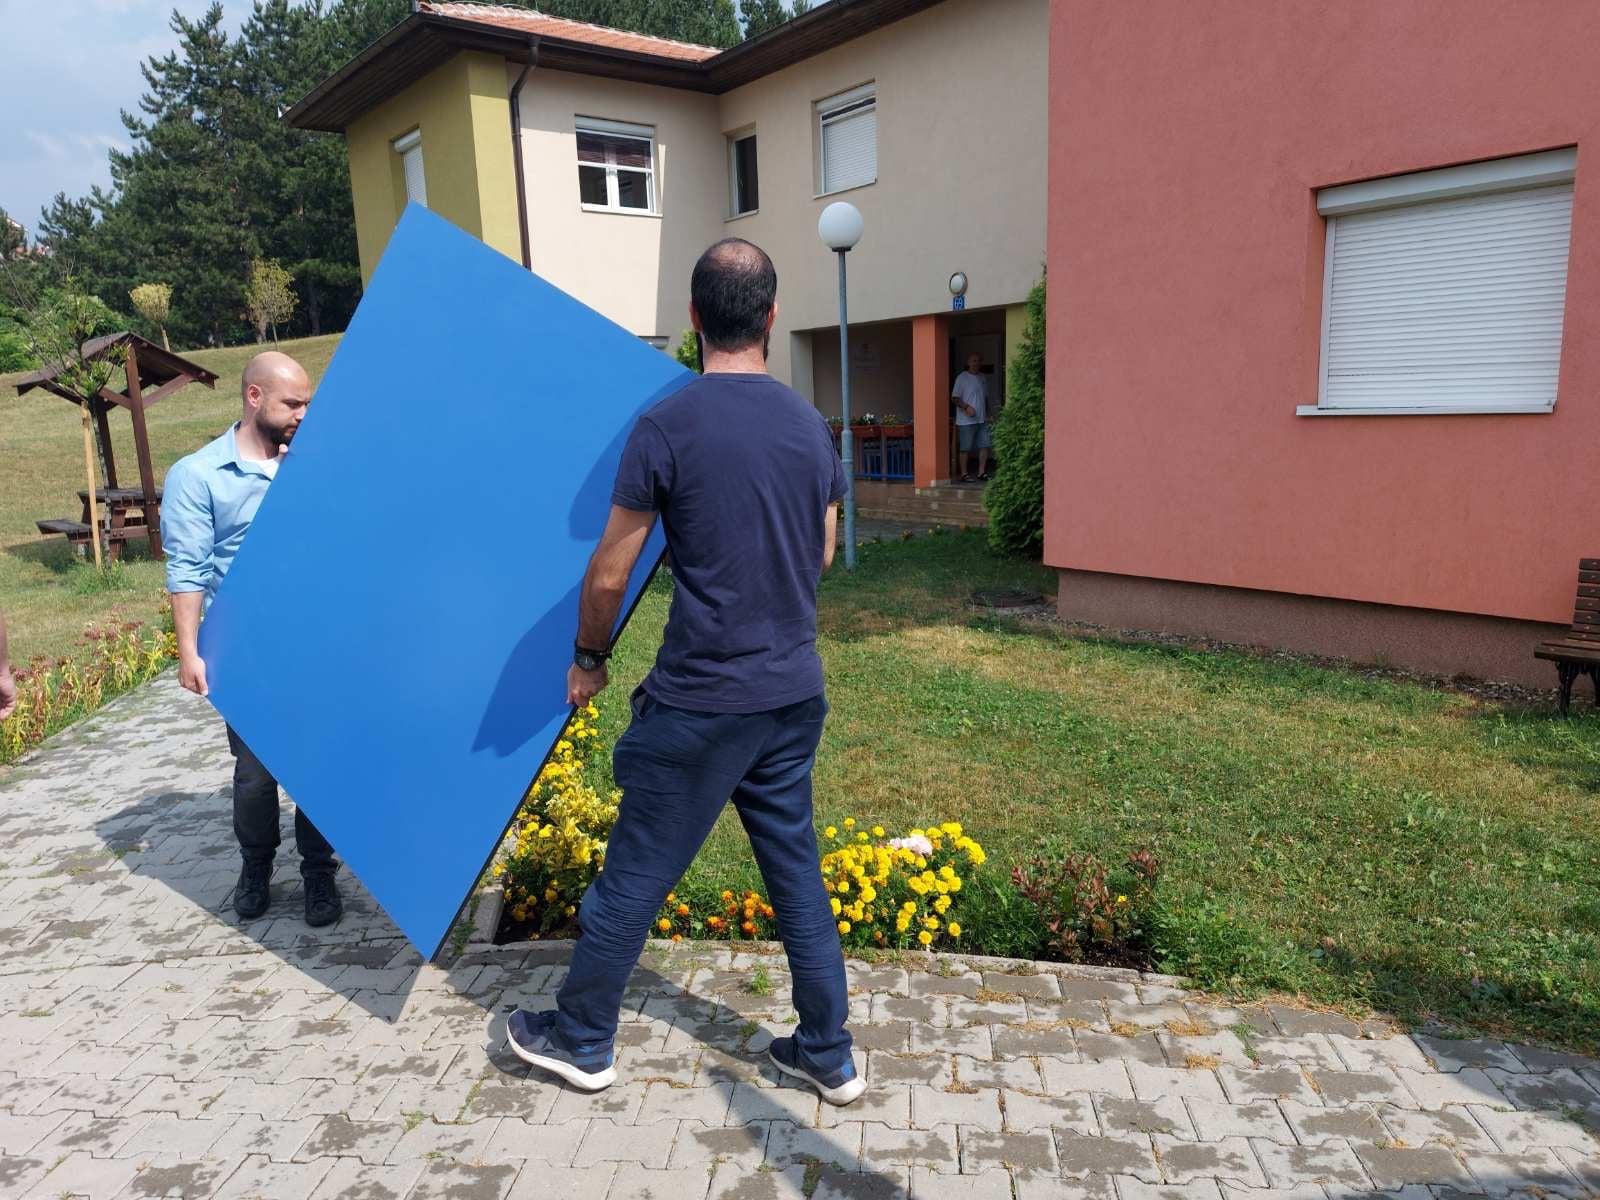 KPP PRiPING dhuron tavolinë pingpongu në SOS fshatin e Prishtinës